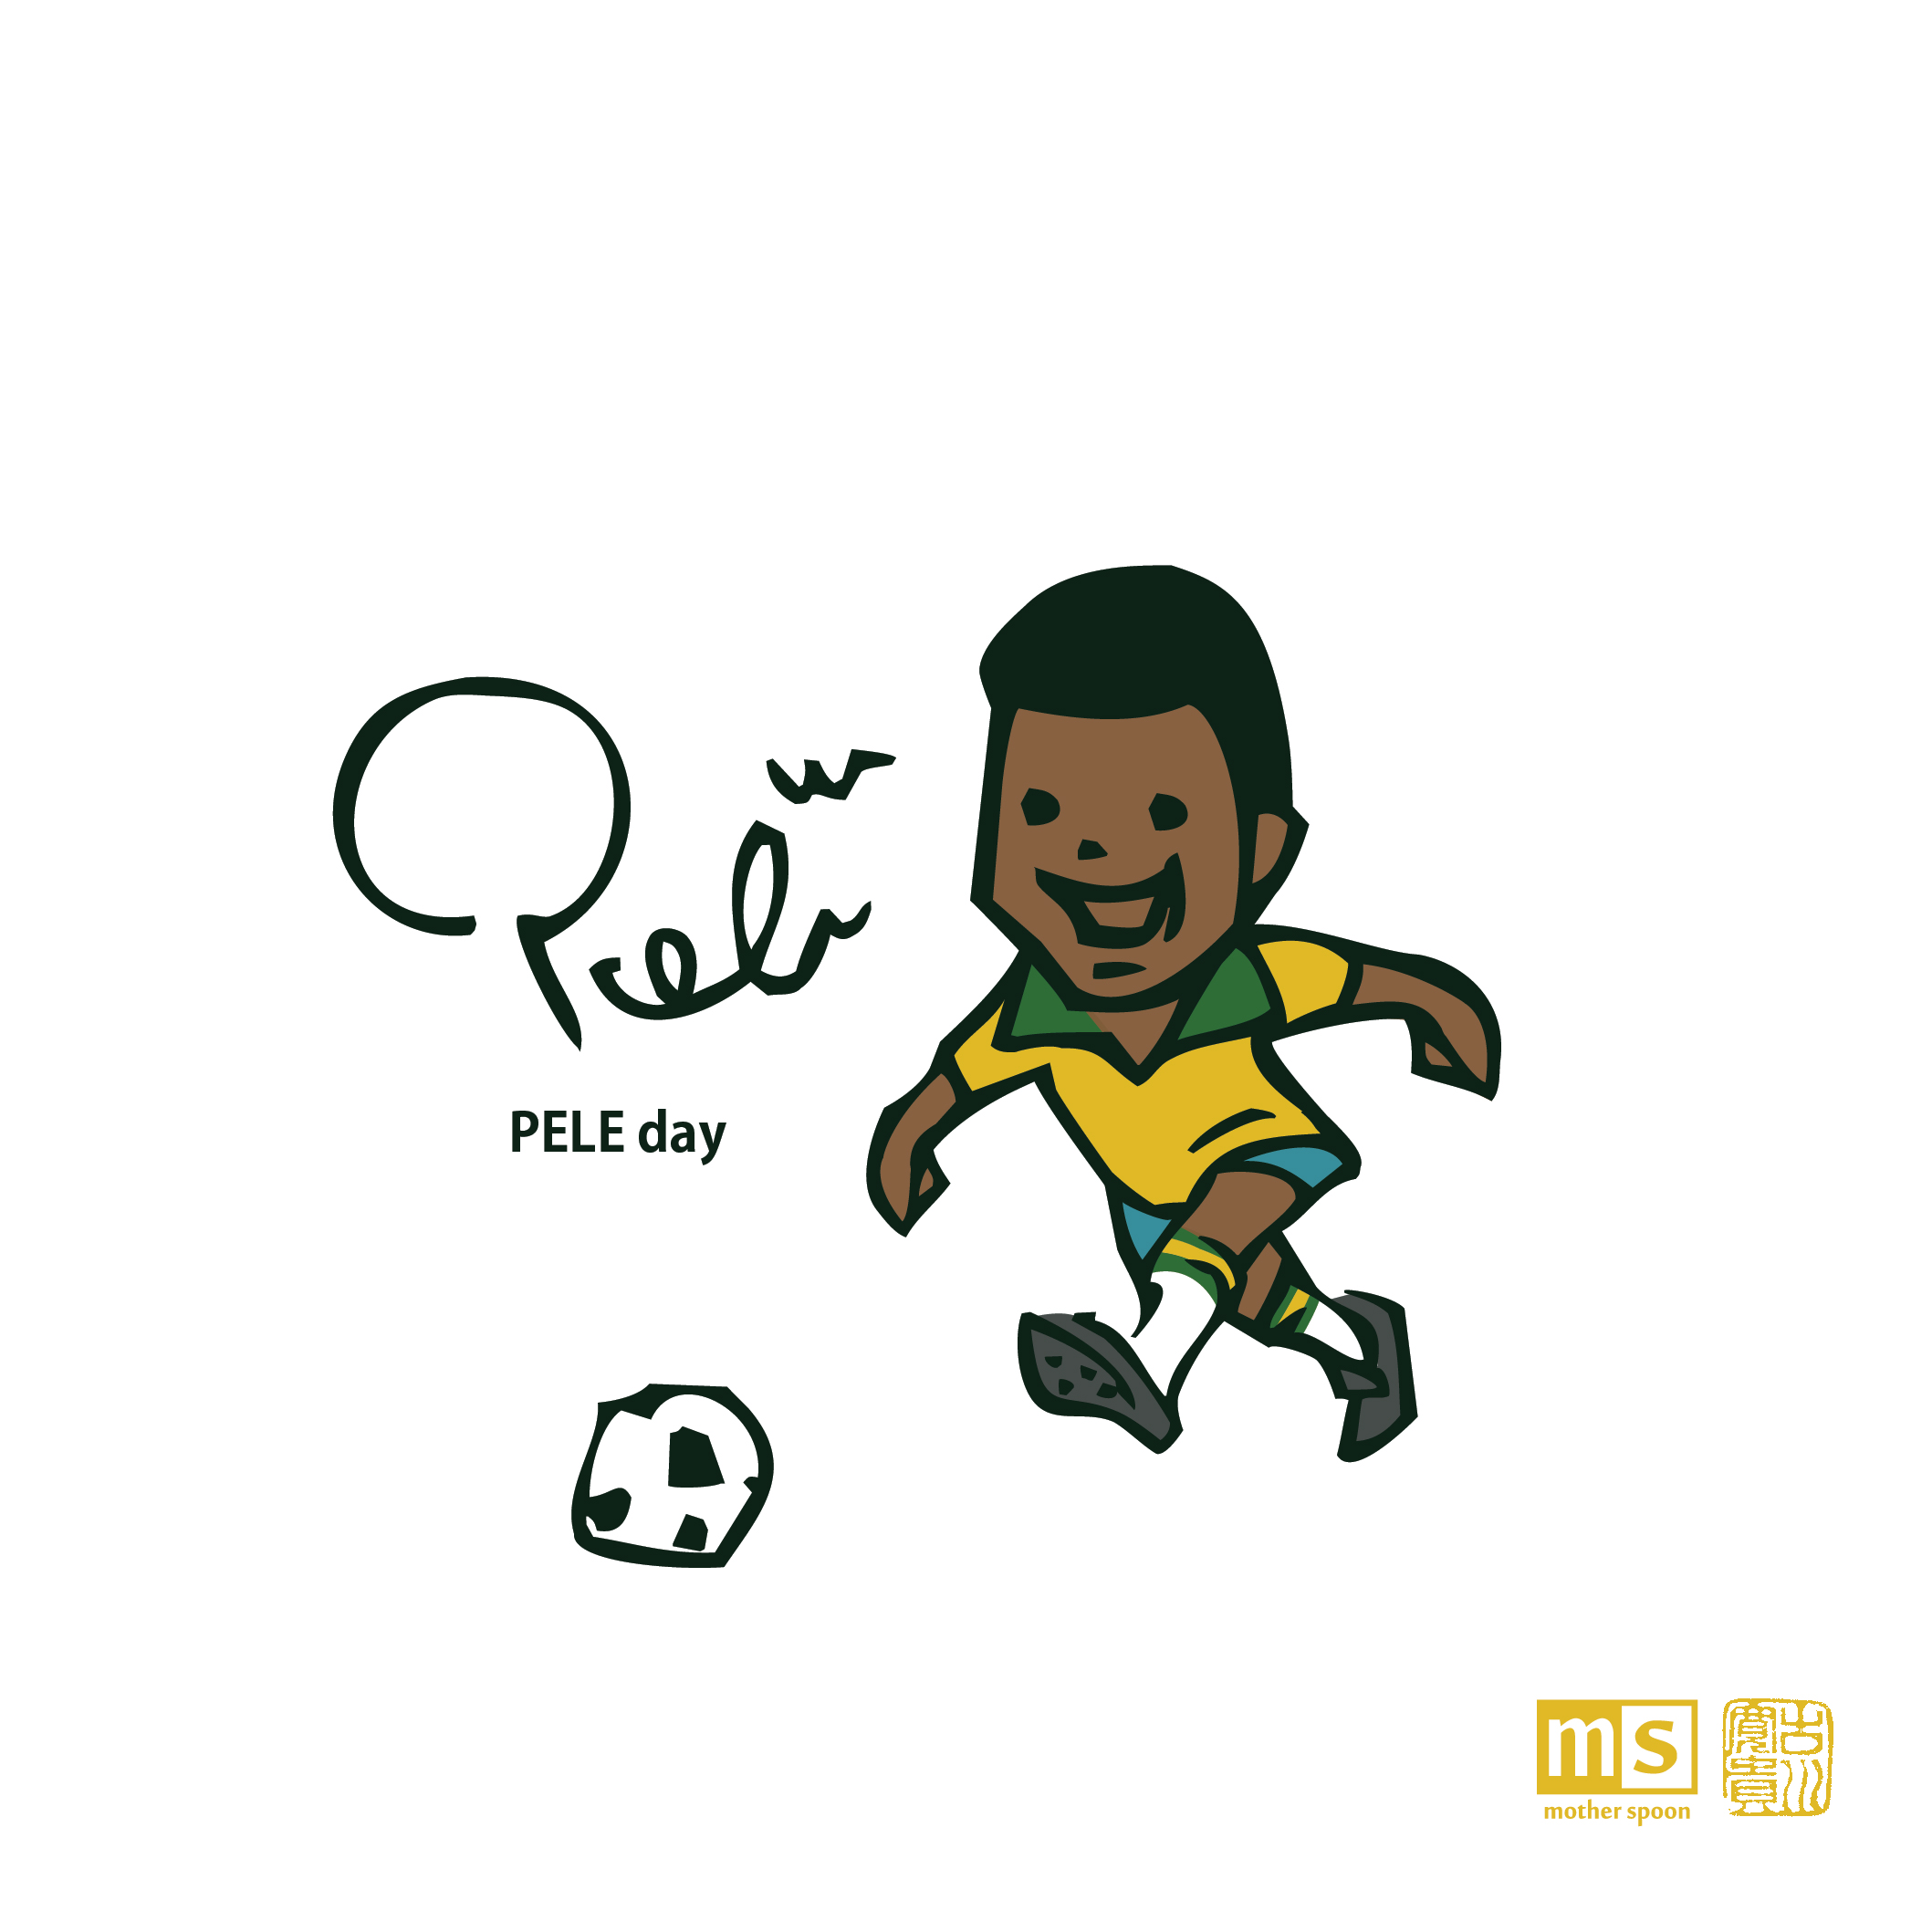 フルカワヒロキ この得点をブラジルの 子供たちに捧げる 1969年の今日 サッカーの神様 ペレが1000ゴールの偉業を達成した 11月19日 ペレの日 ペレ Pele サッカー Soccer 今日は何の日 Illustration イラスト Peleday T Co